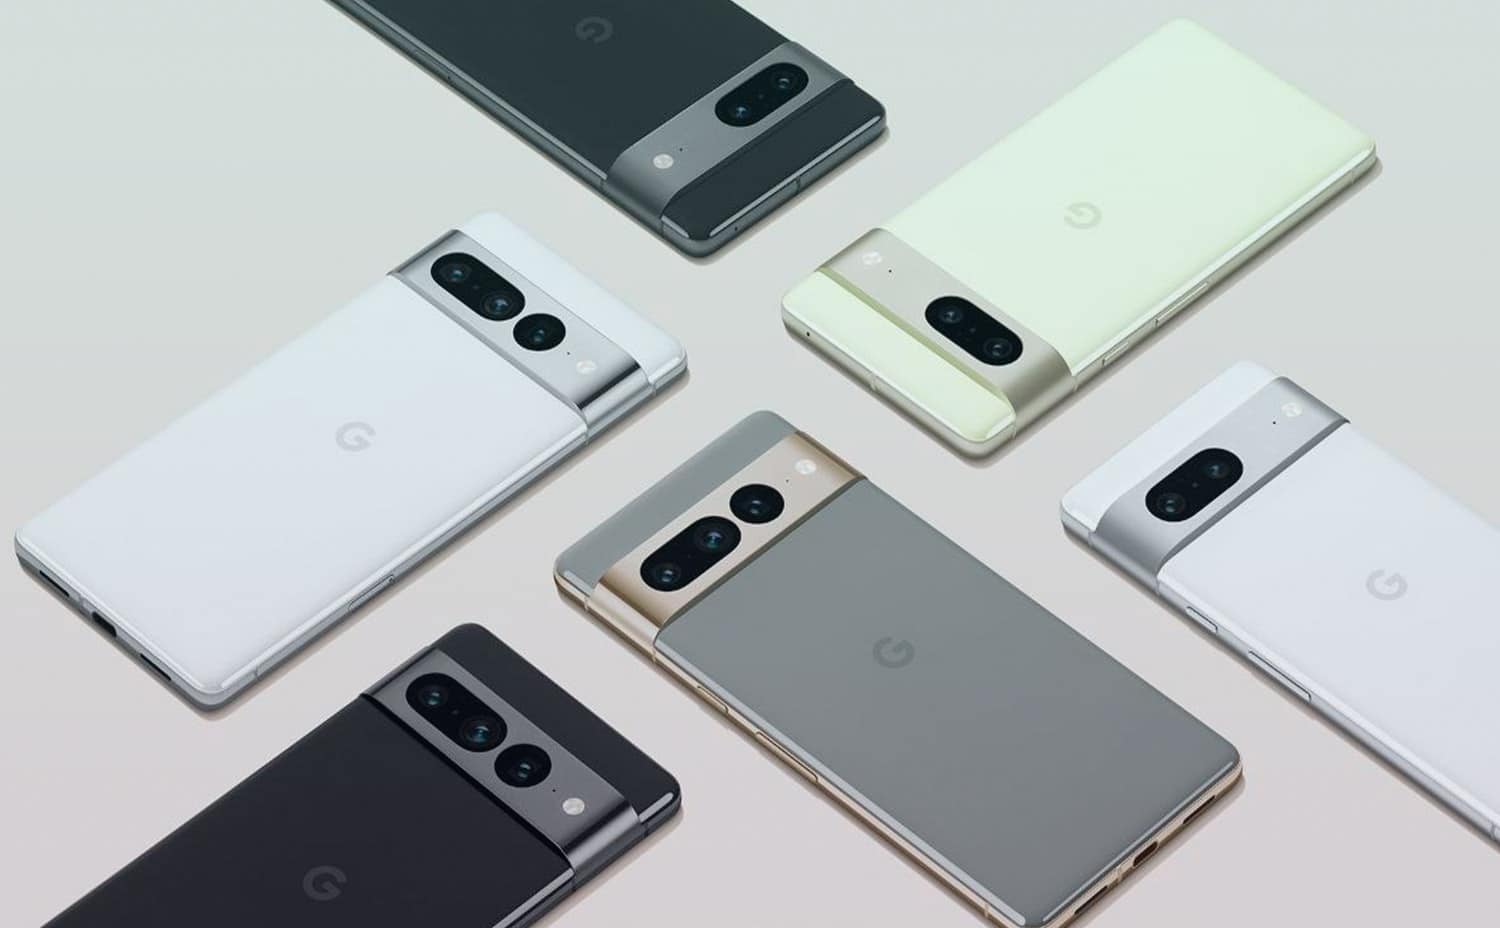 المنتظر لدى الكثير Google Pixel 7 Pro يأتي بكاميرا أكثر من رائعة ومزايا رهيبة جديدة وفقا لأحدث التسريبات